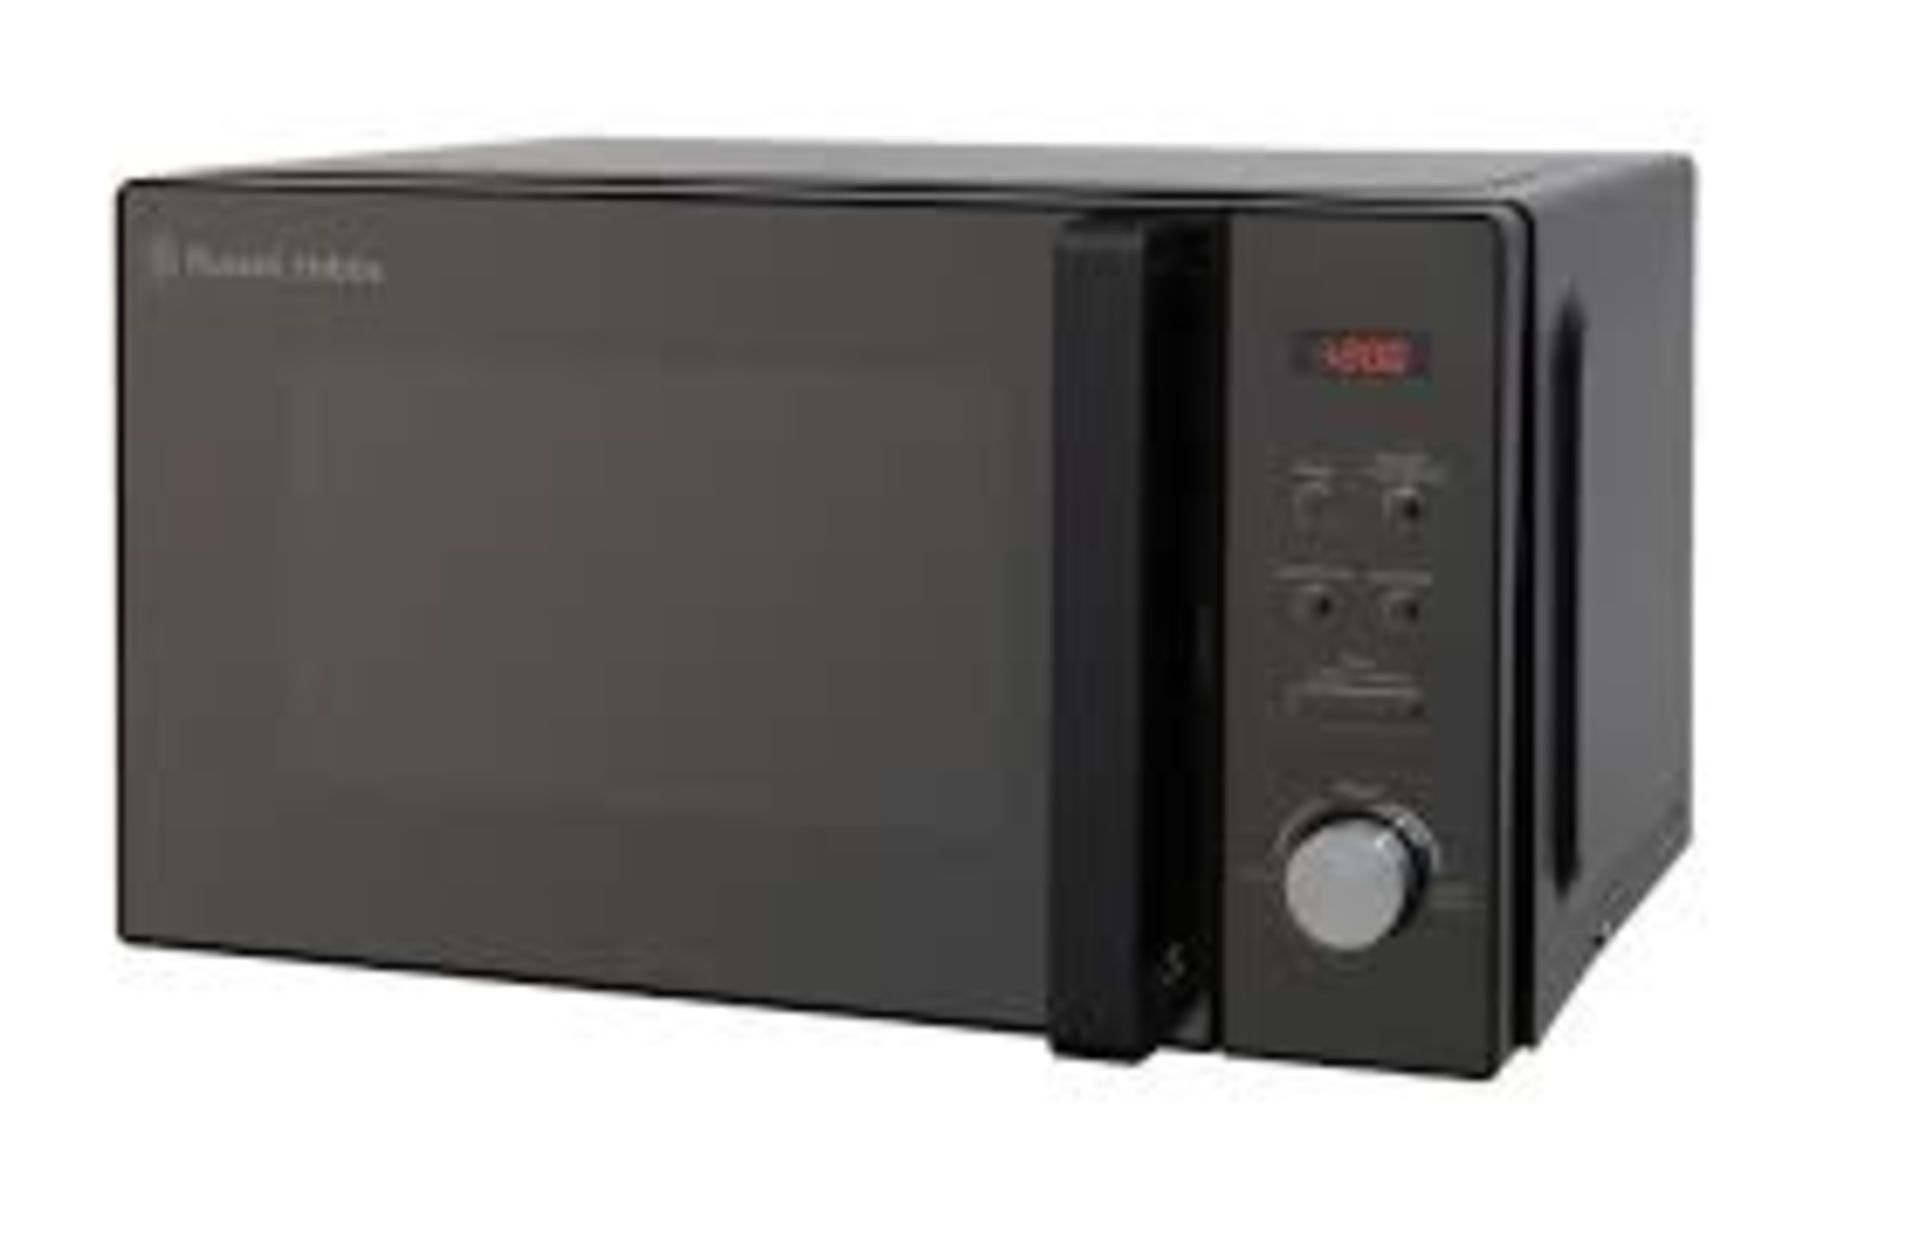 (REF117999) Russell Hobbs 20 Litre Digital Microwave RRP 119.99